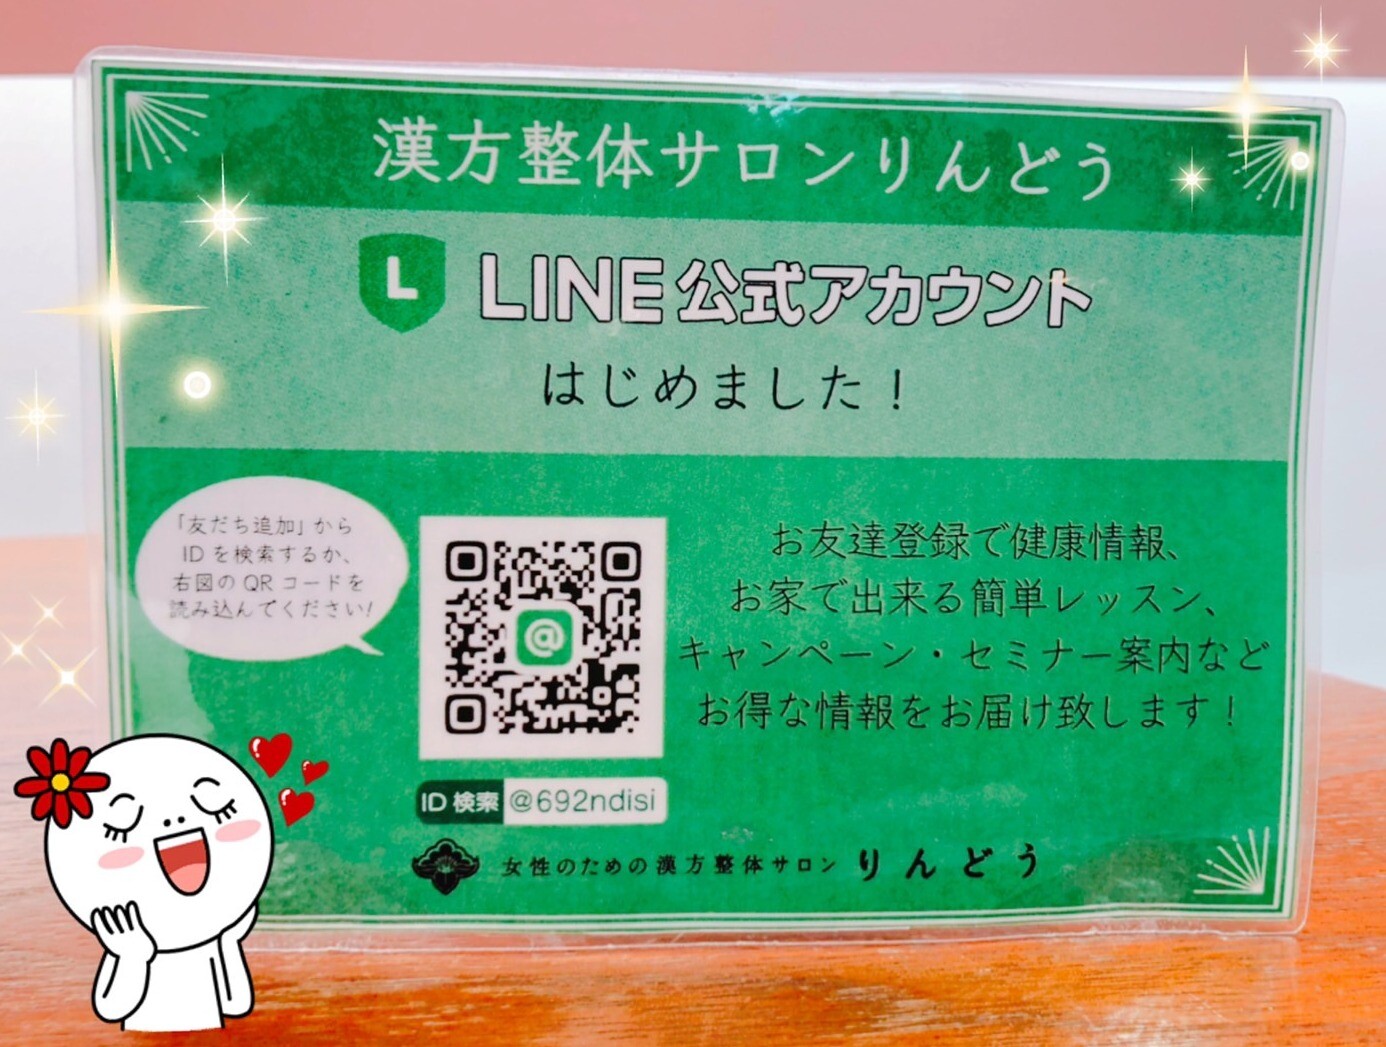 凛道LINEショップカード